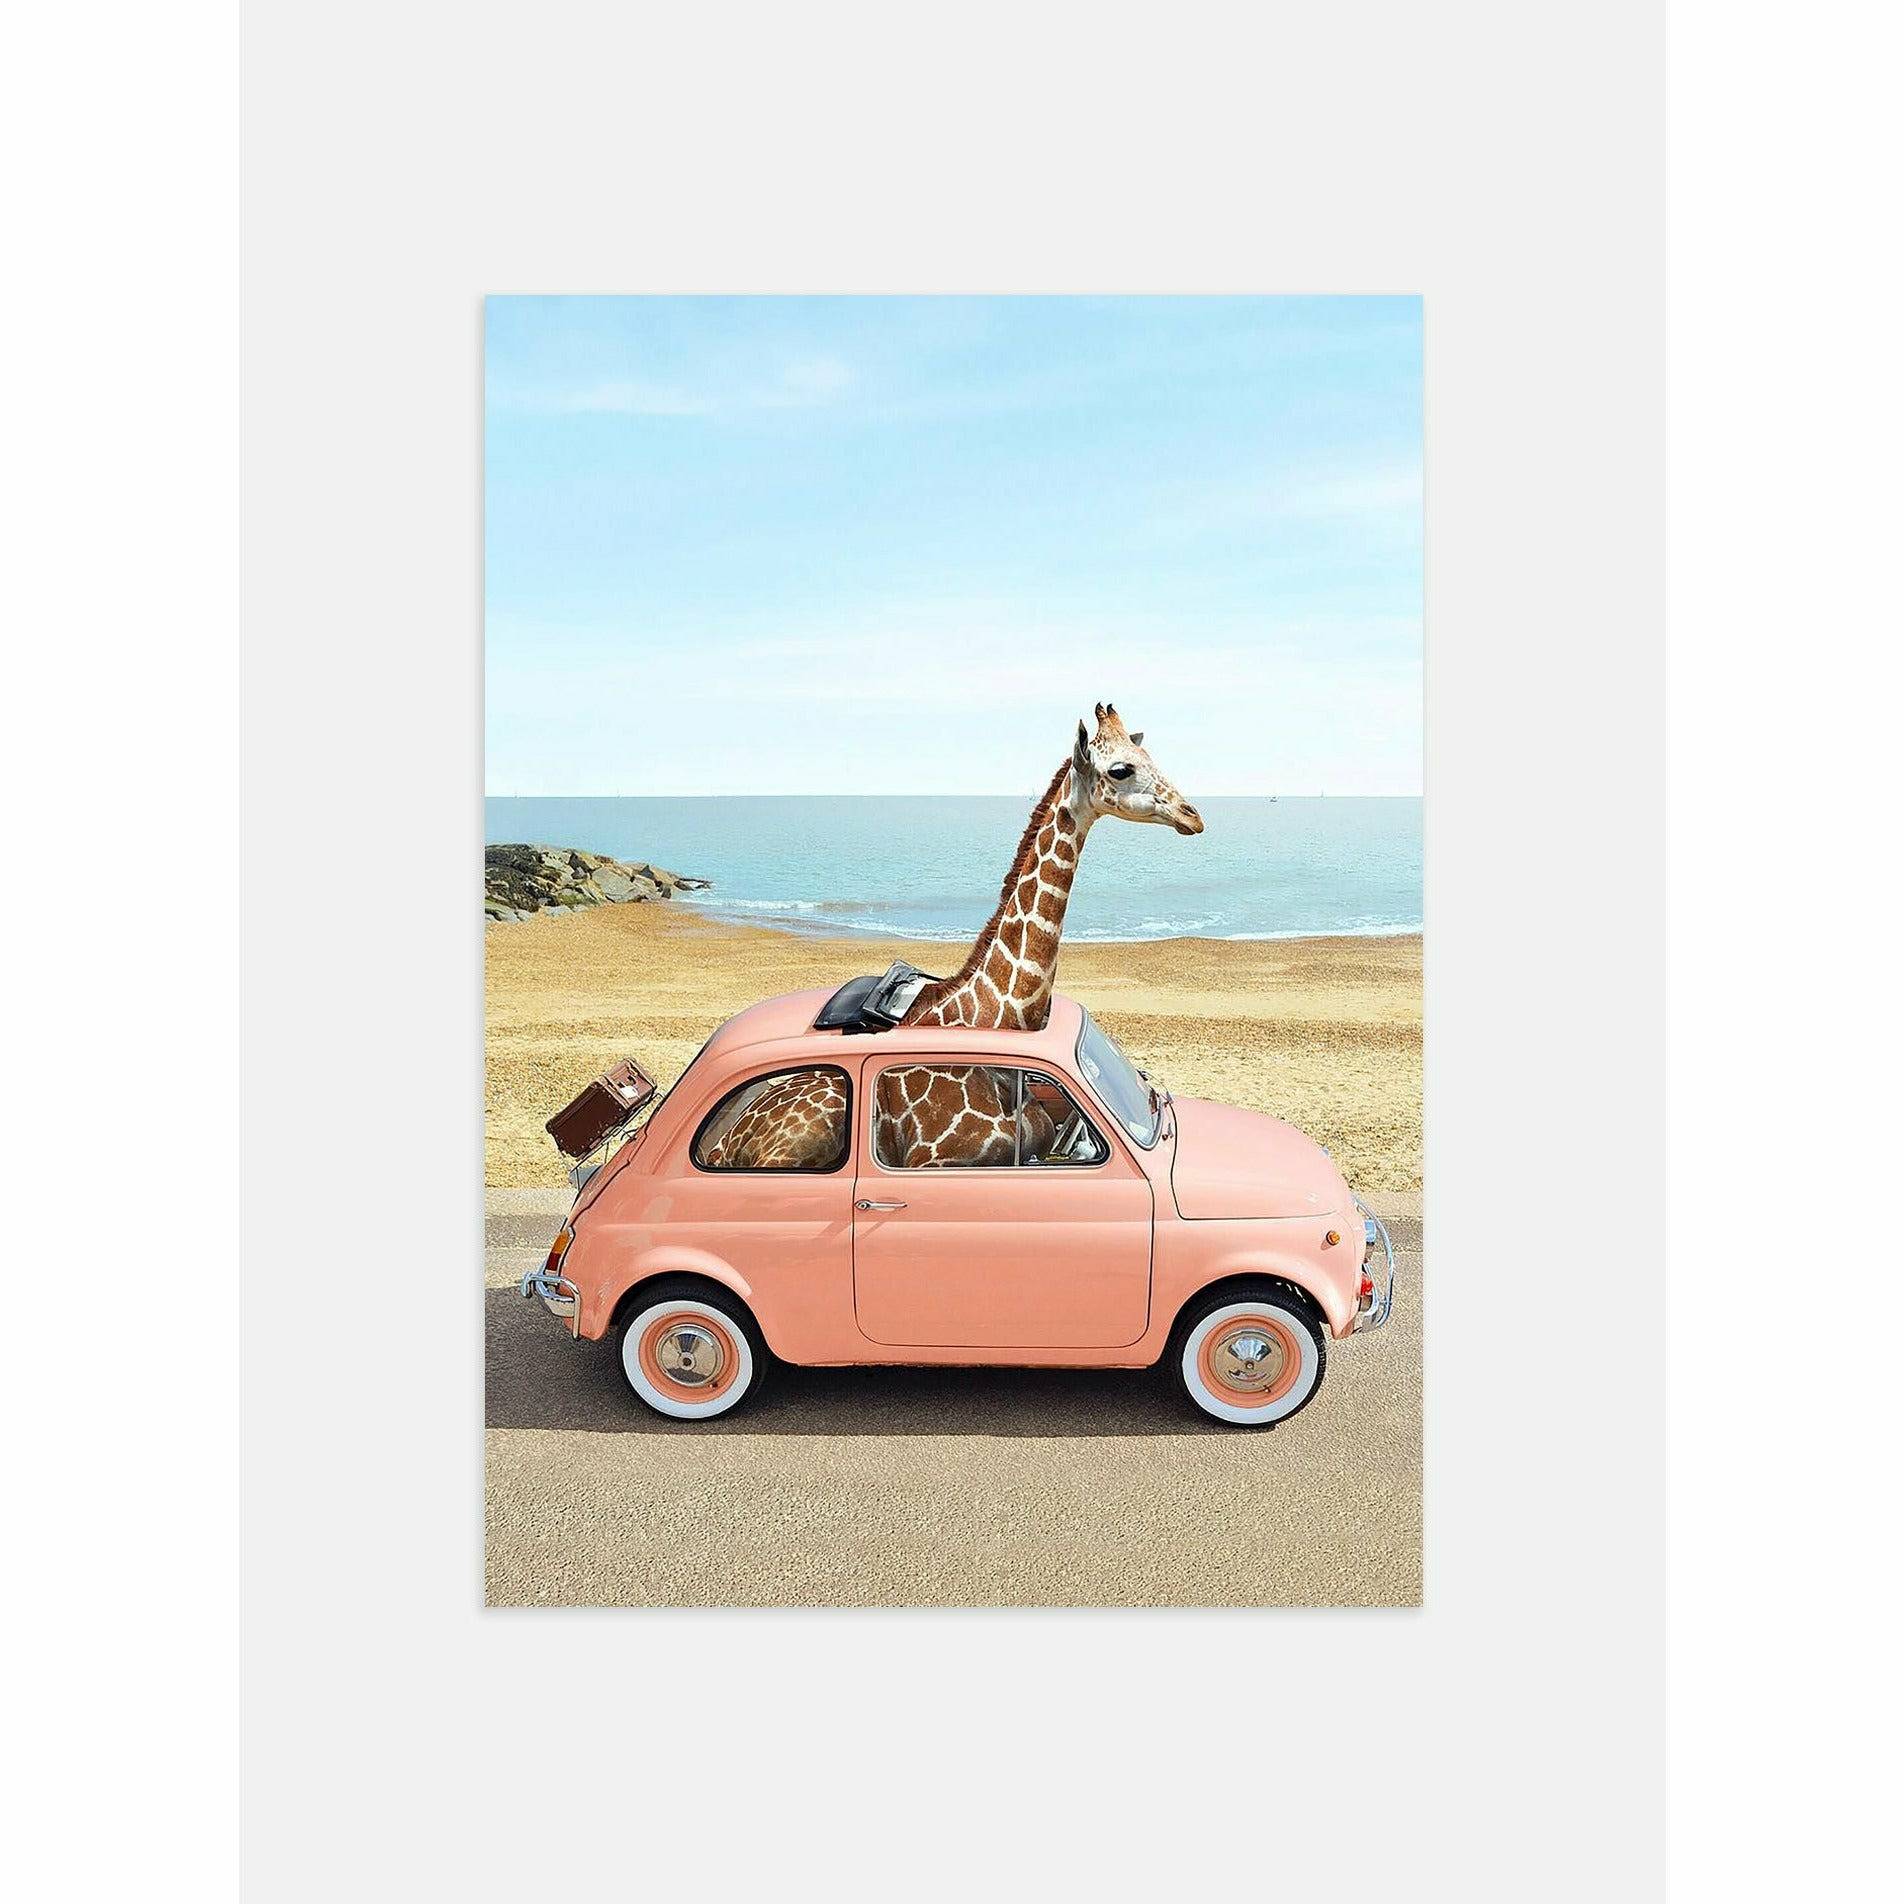 Giraffe in a car